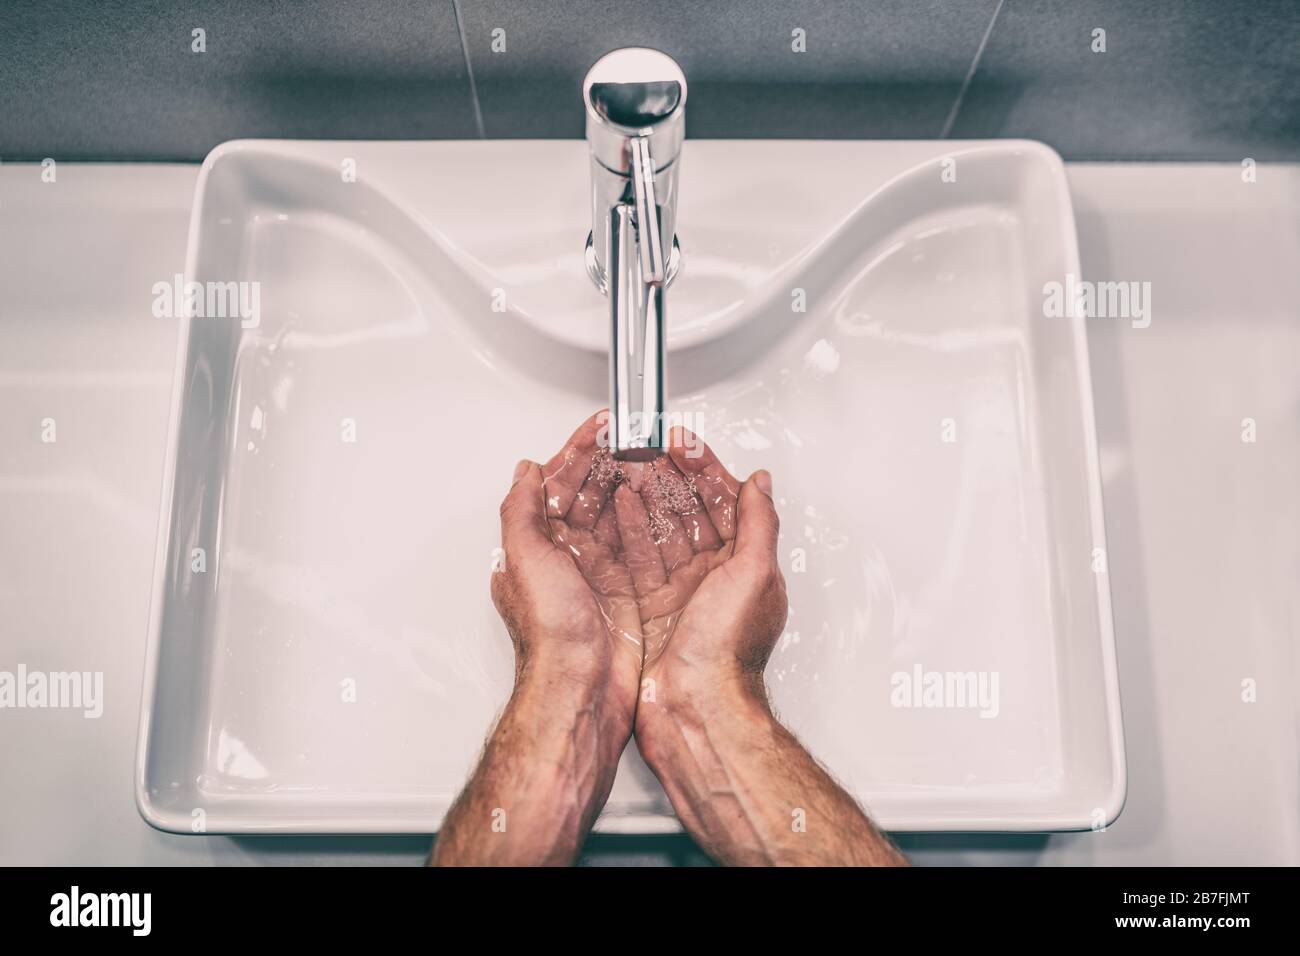 Waschen der Hände mit Seife am Arbeitsplatz Waschbecken Mann Handpflege Hygiene für Coronavirus Ausbruch Prävention. Corona Virus Pandemie Vorsorge durch häufiges Händewaschen für 20 Sekunden. Stockfoto